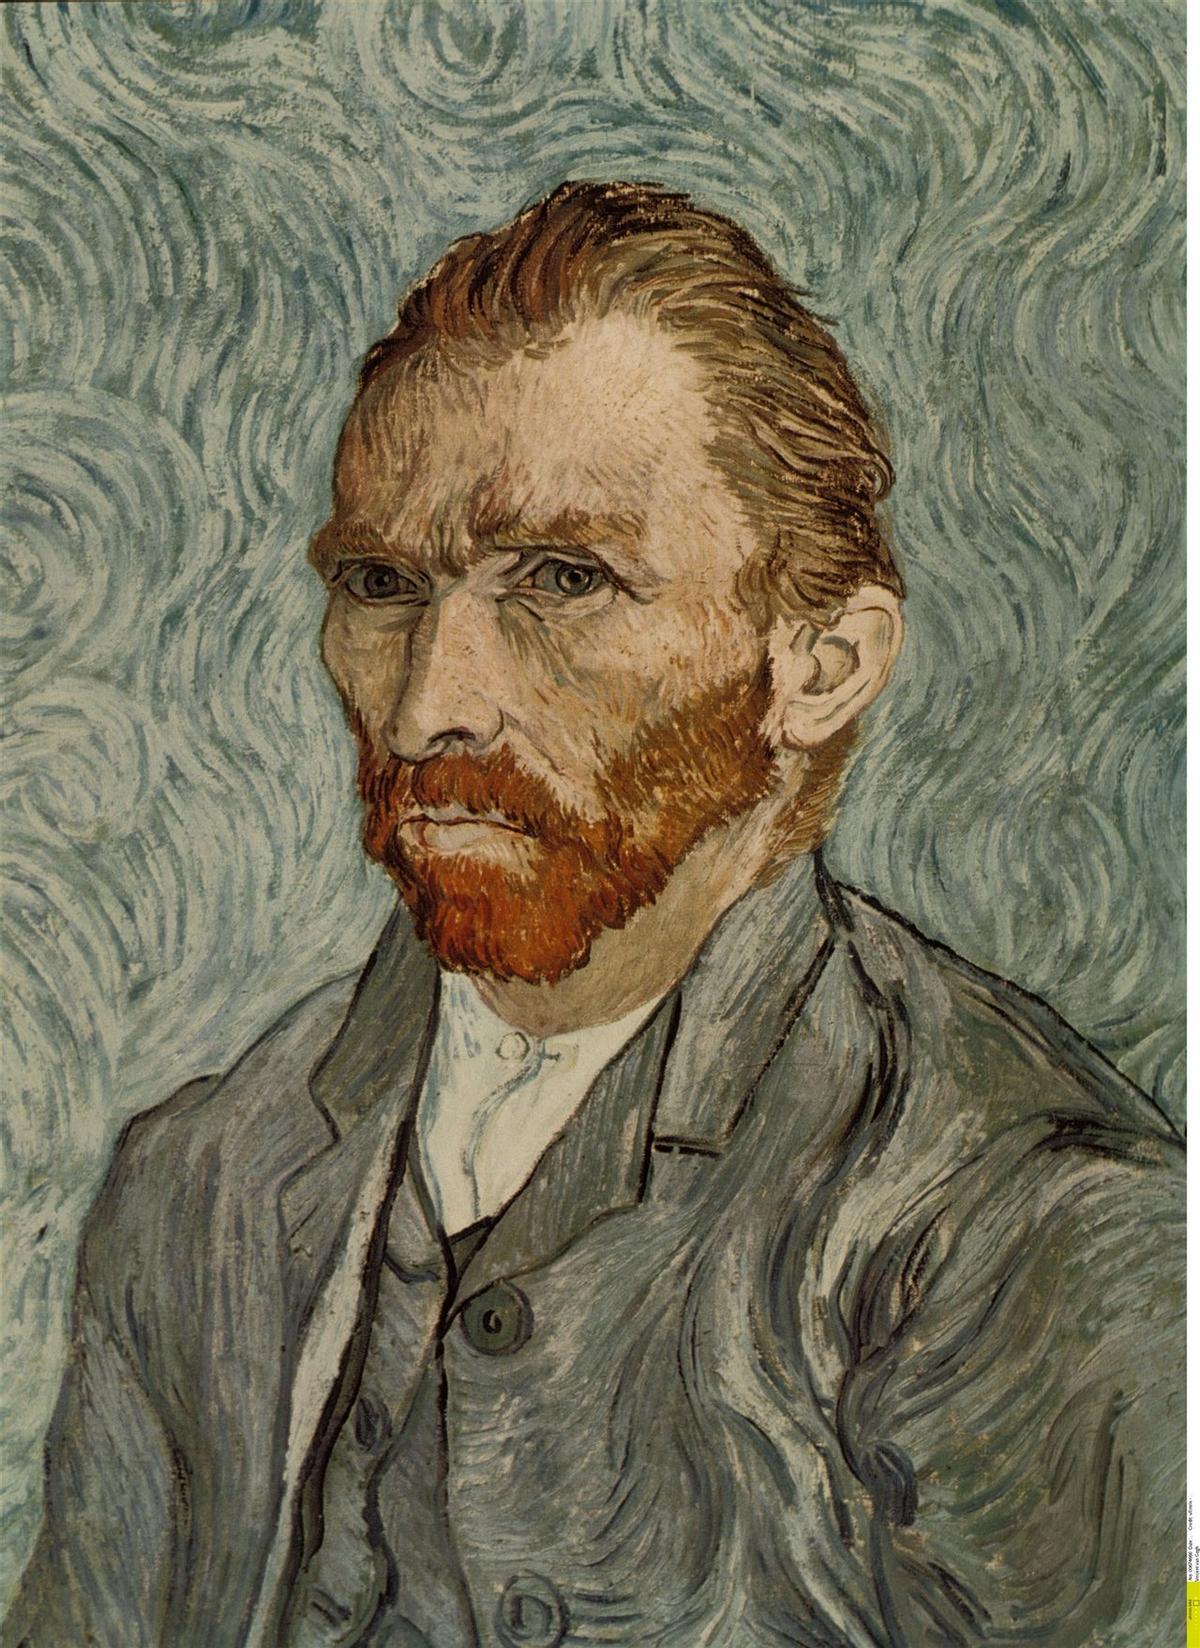 Auterretrato de Vincent van Gogh.